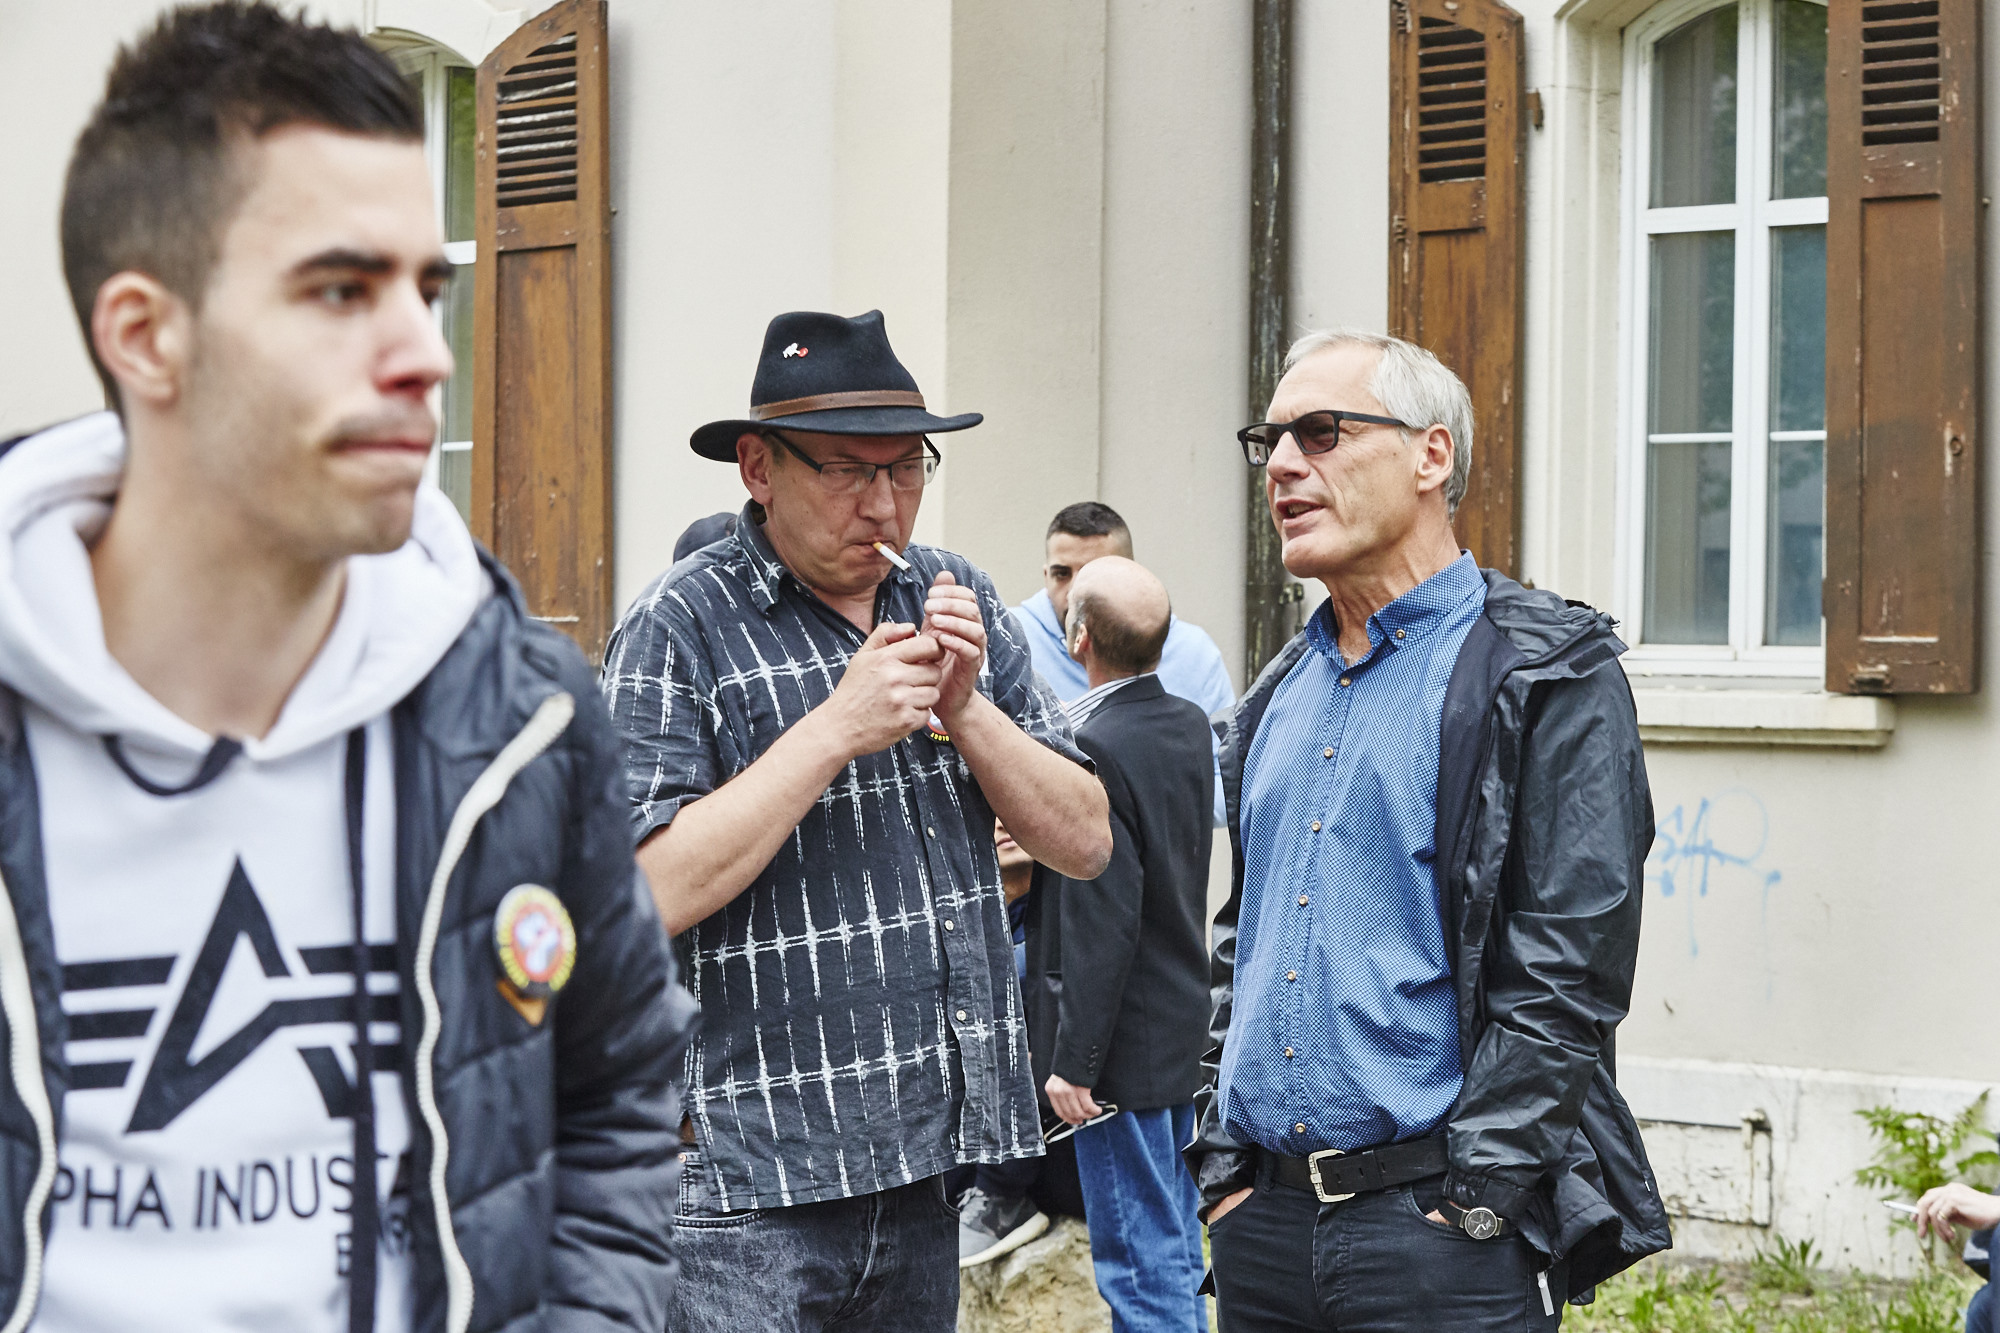 Stadtentwickler Thomas Kessler (rechts) im Dialog mit Scientology-Gegner Thomas Erlemann.